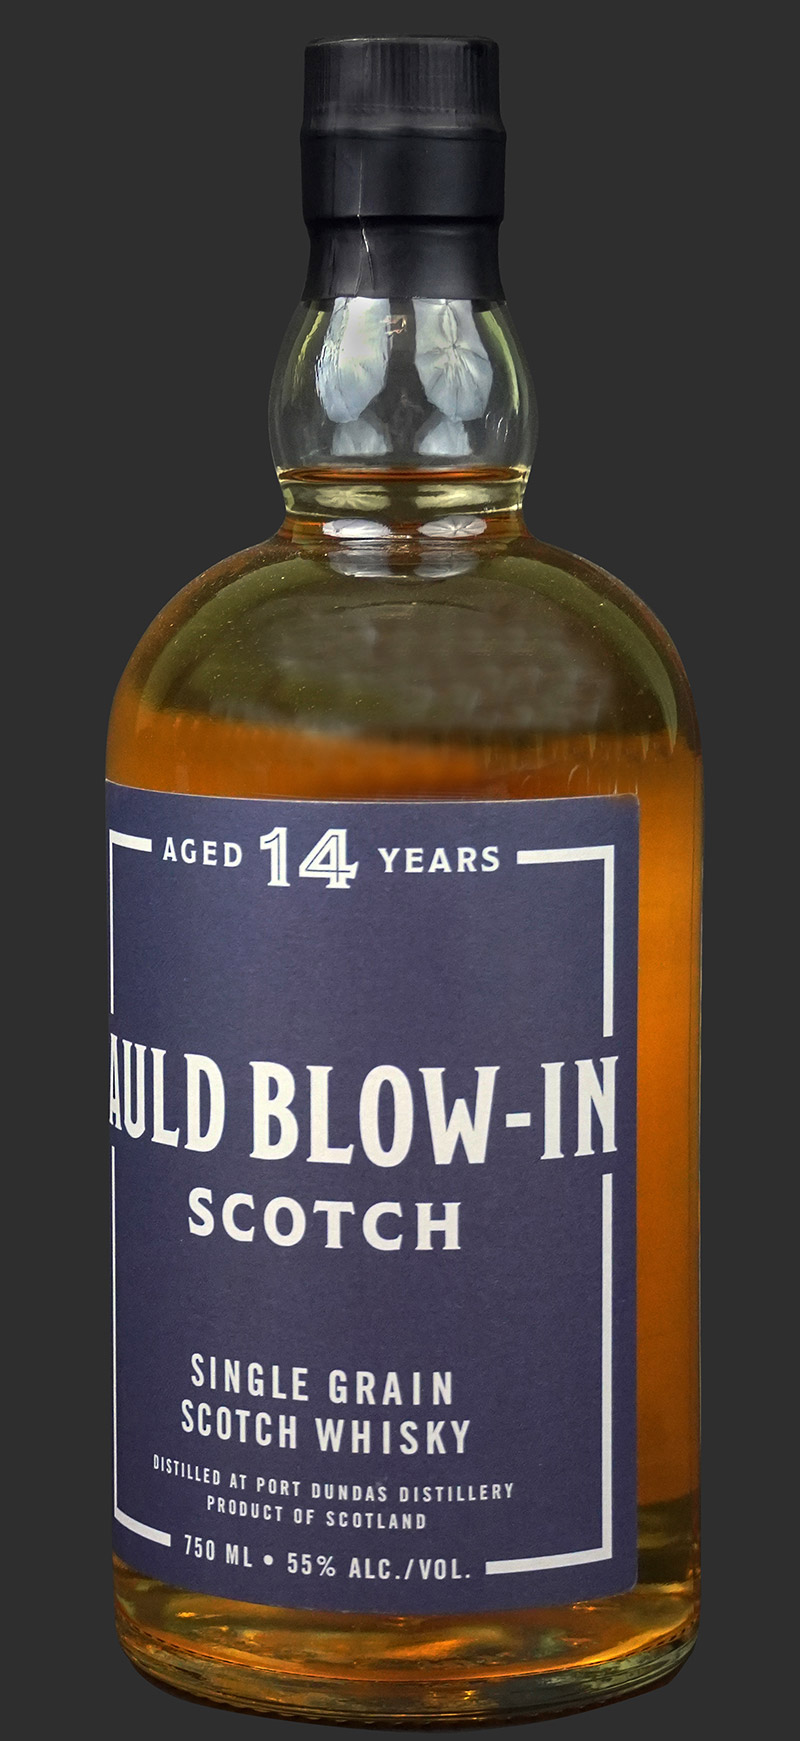 Auld Blow-In Scotch